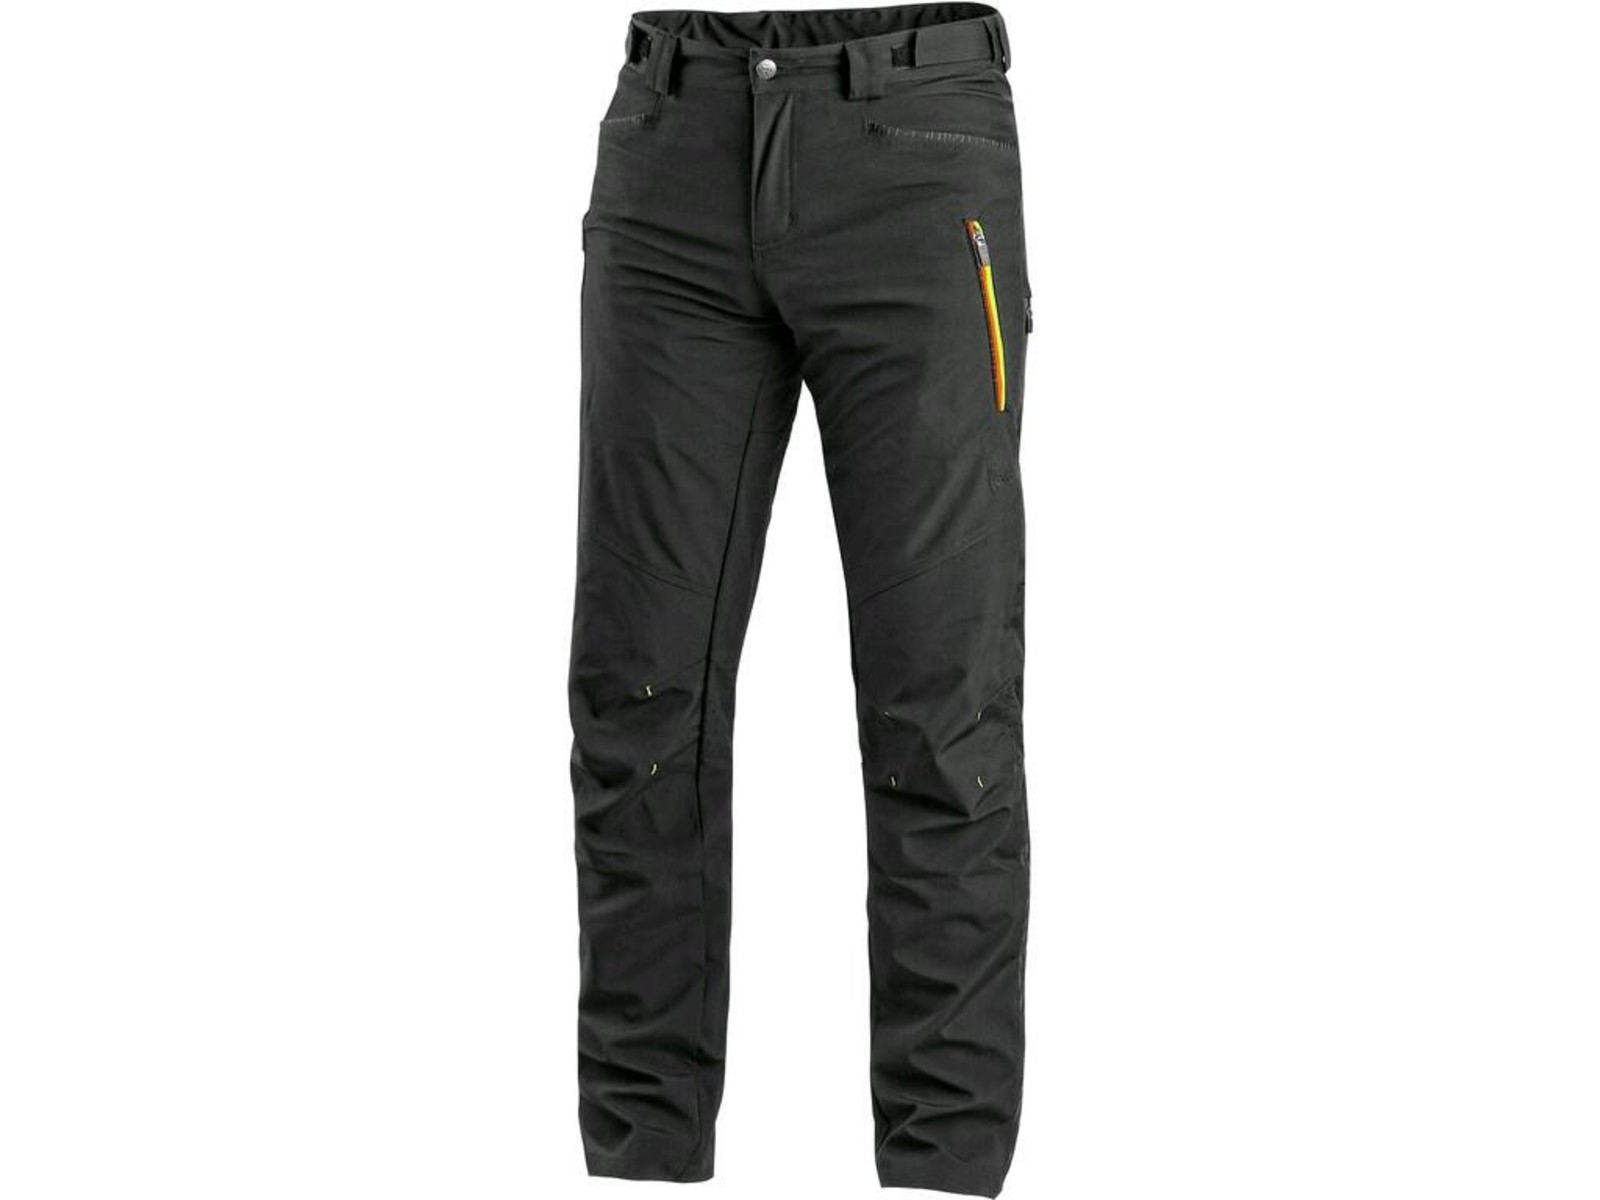 Pánske softshellové nohavice CXS Akron - veľkosť: 46, farba: čierna/žltá